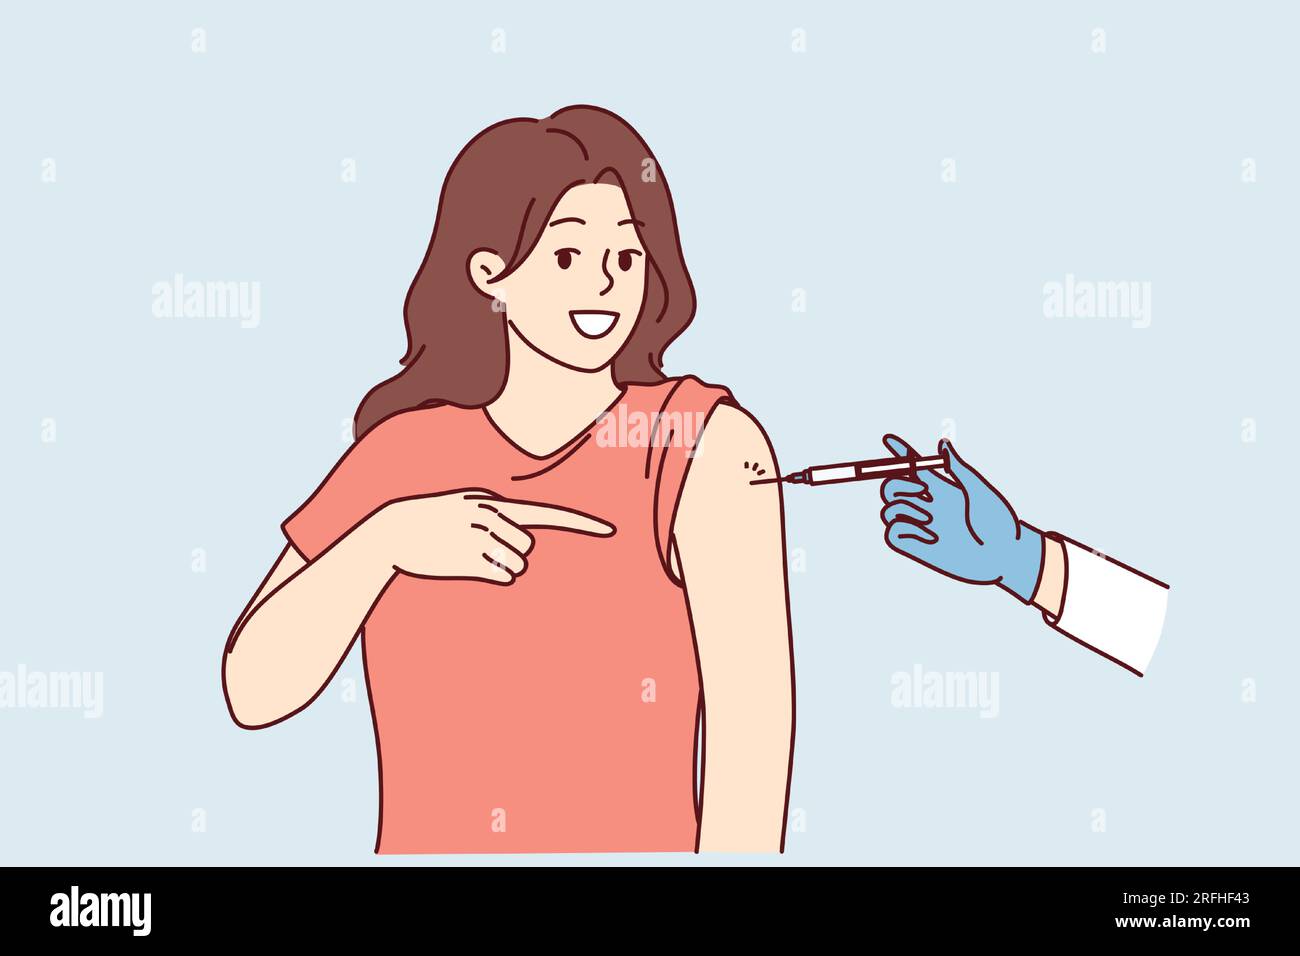 La femme reçoit une injection dans l'épaule en se faisant vacciner et pointe du doigt la seringue dans la main du médecin. Protection préventive contre la grippe ou la pandémie et vaccinée pour éviter l'infection par le virus Illustration de Vecteur